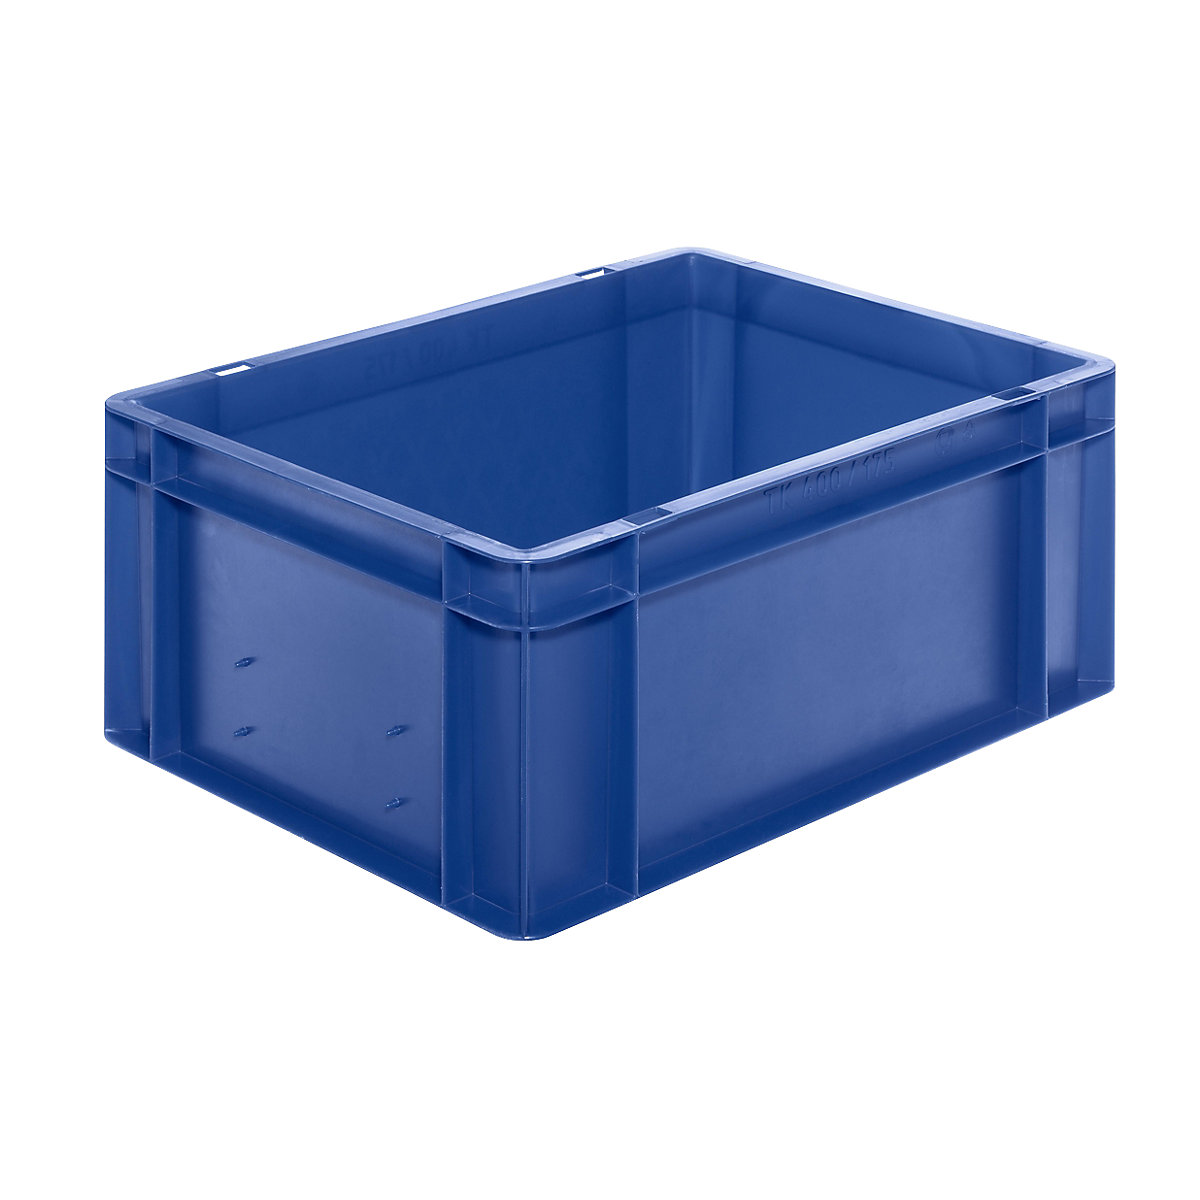 Euro-Format-Stapelbehälter, Wände und Boden geschlossen, LxBxH 400 x 300 x 175 mm, blau, VE 5 Stk